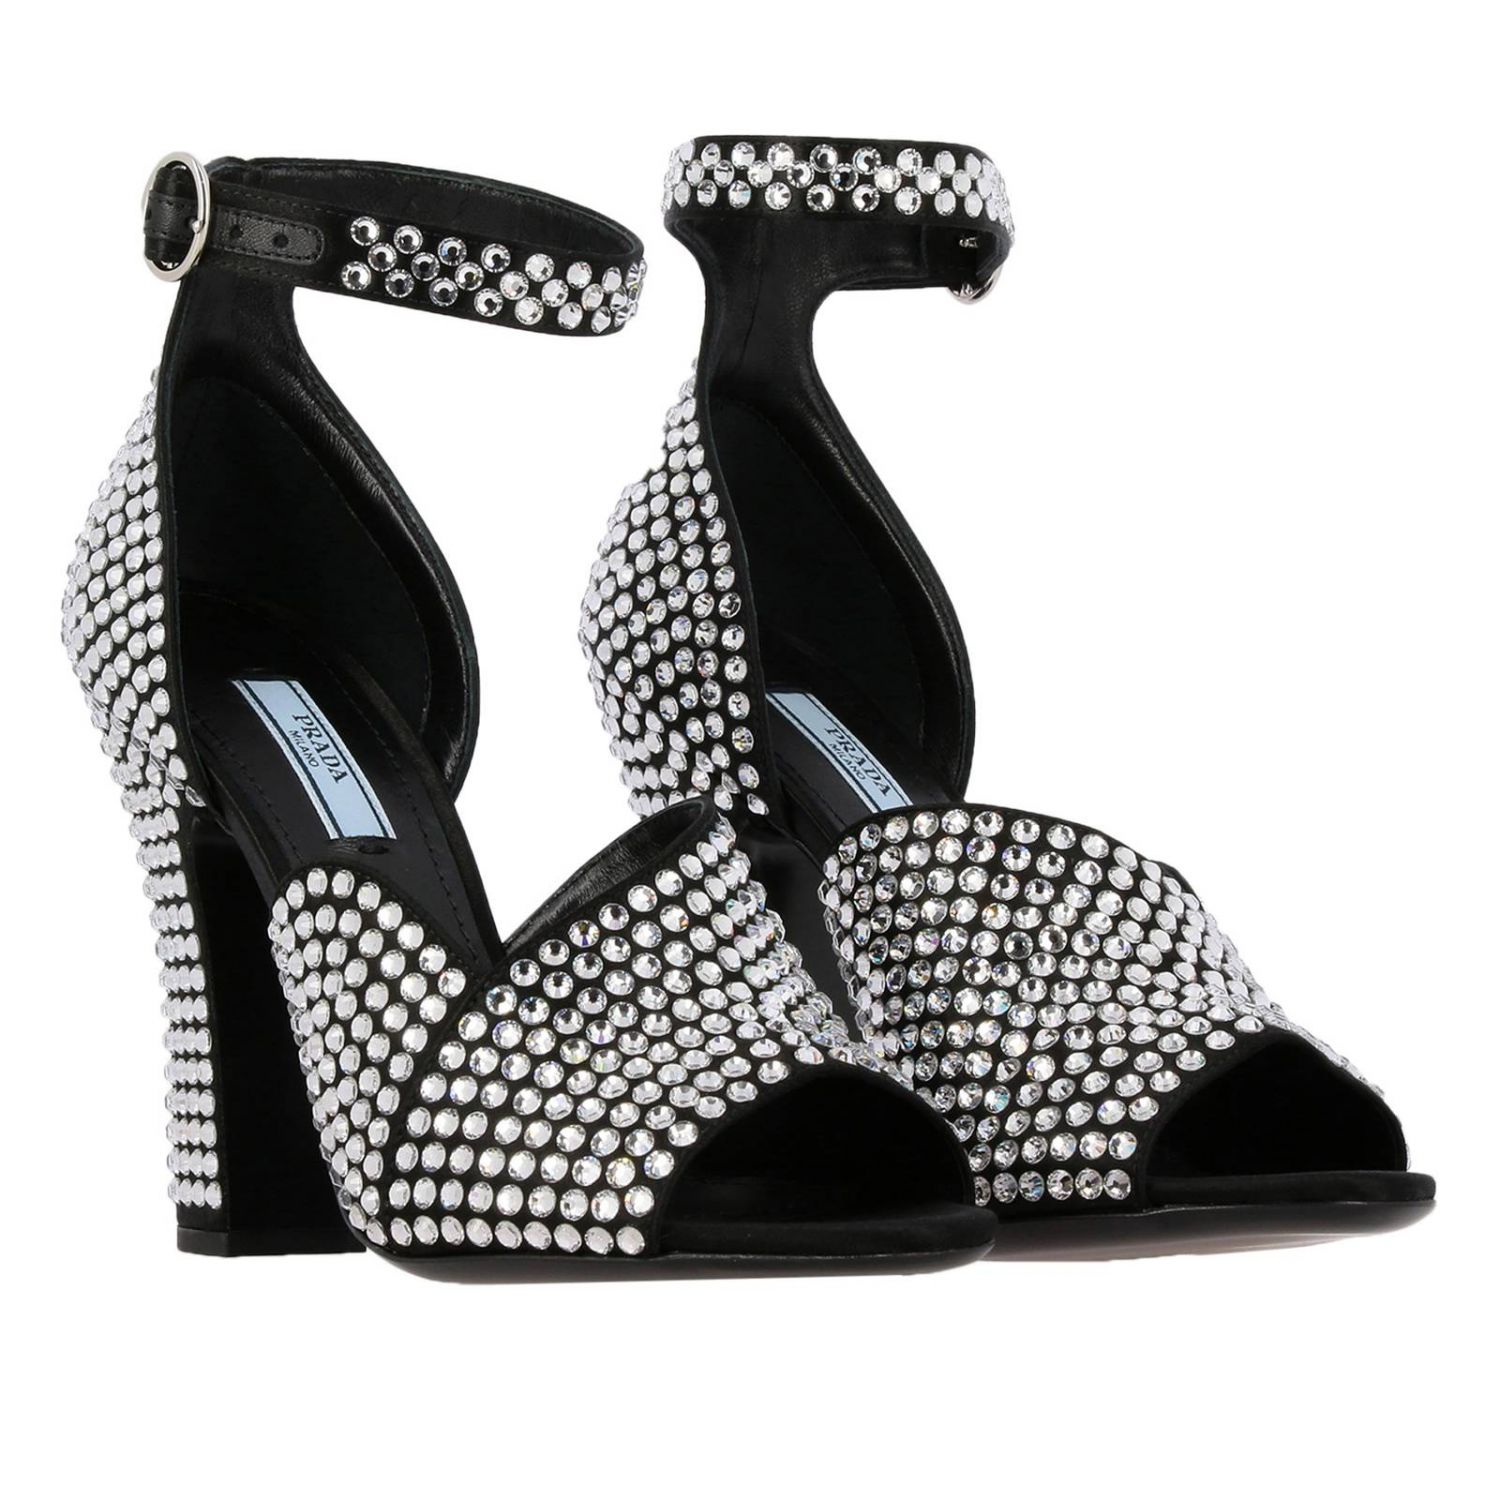 Босоножки на каблуке Prada: Сандалии Prada с открытым носком и кристаллами all over черный 2